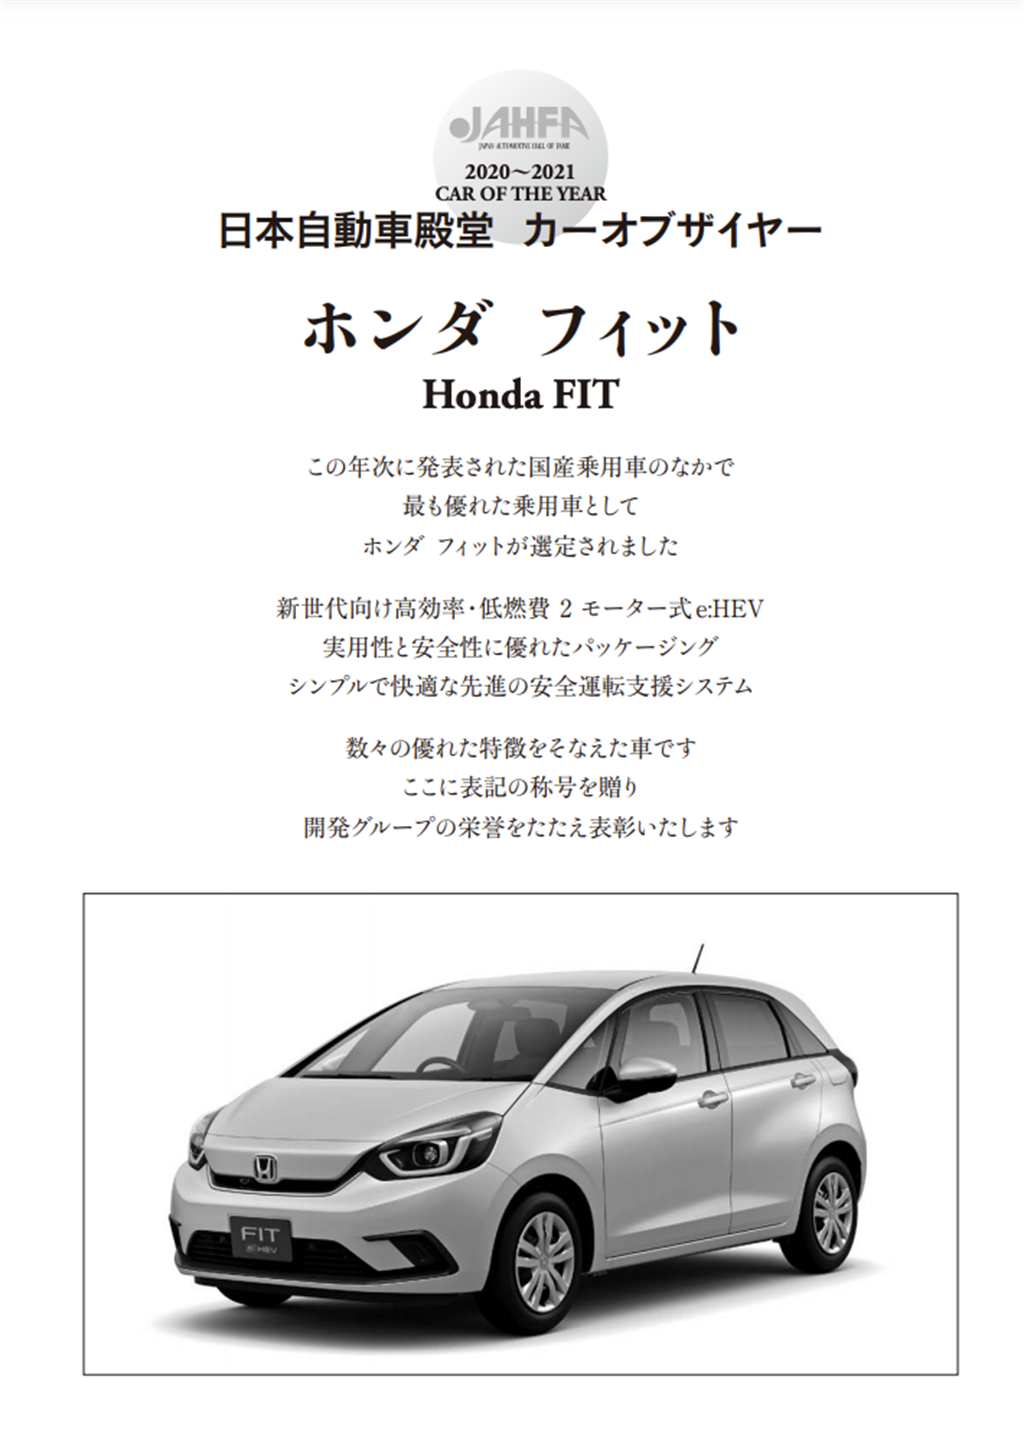 展現用之美、Honda FIT 榮獲「Red Dot Design Award 2021」與「2020日本自動車殿堂-年度風雲車」
